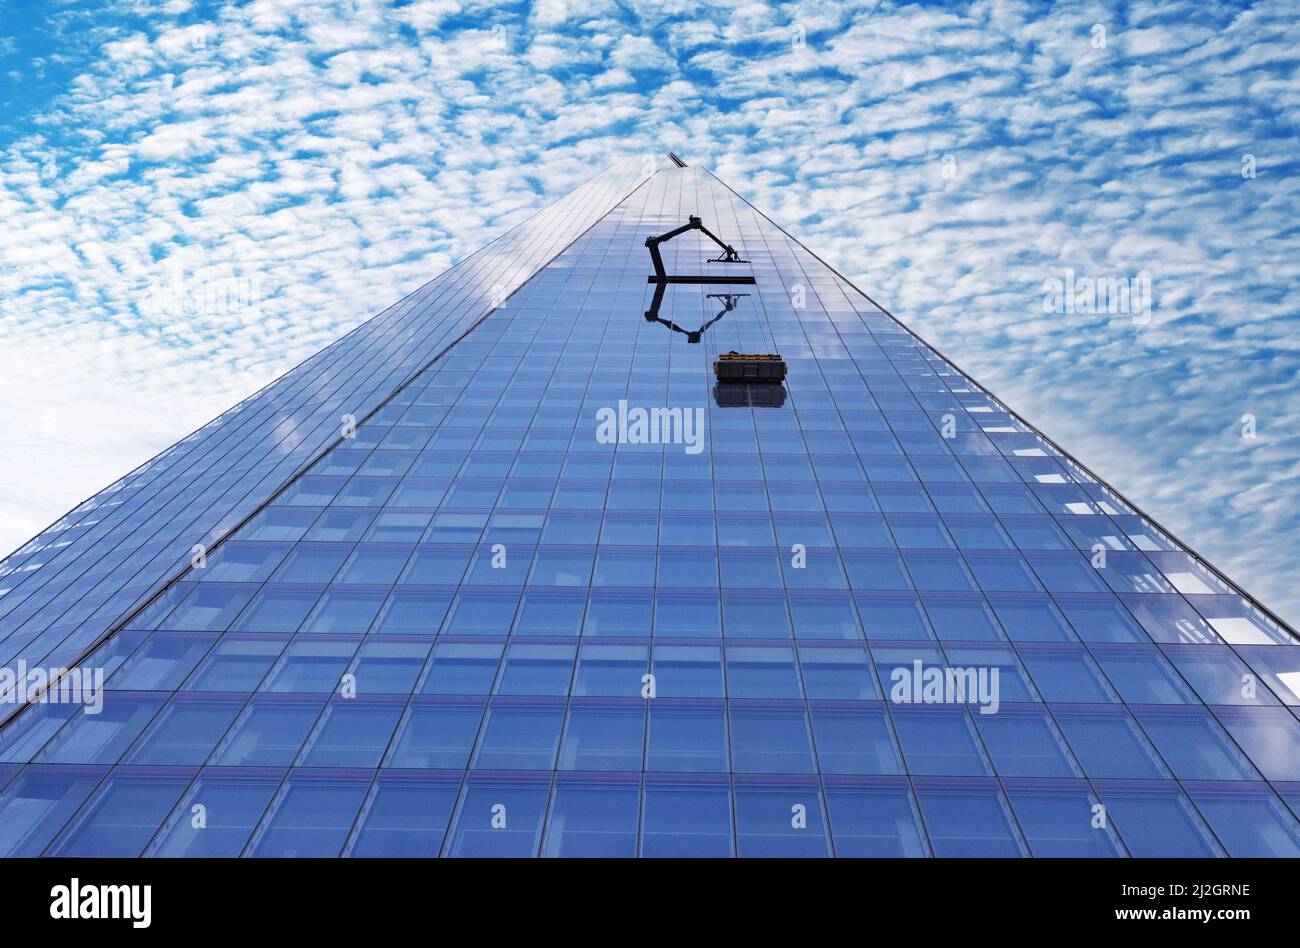 The Shard London, vue sur un ciel de maquereau, London Shard gratte-ciel, architecture moderne, centre de Londres Royaume-Uni Banque D'Images